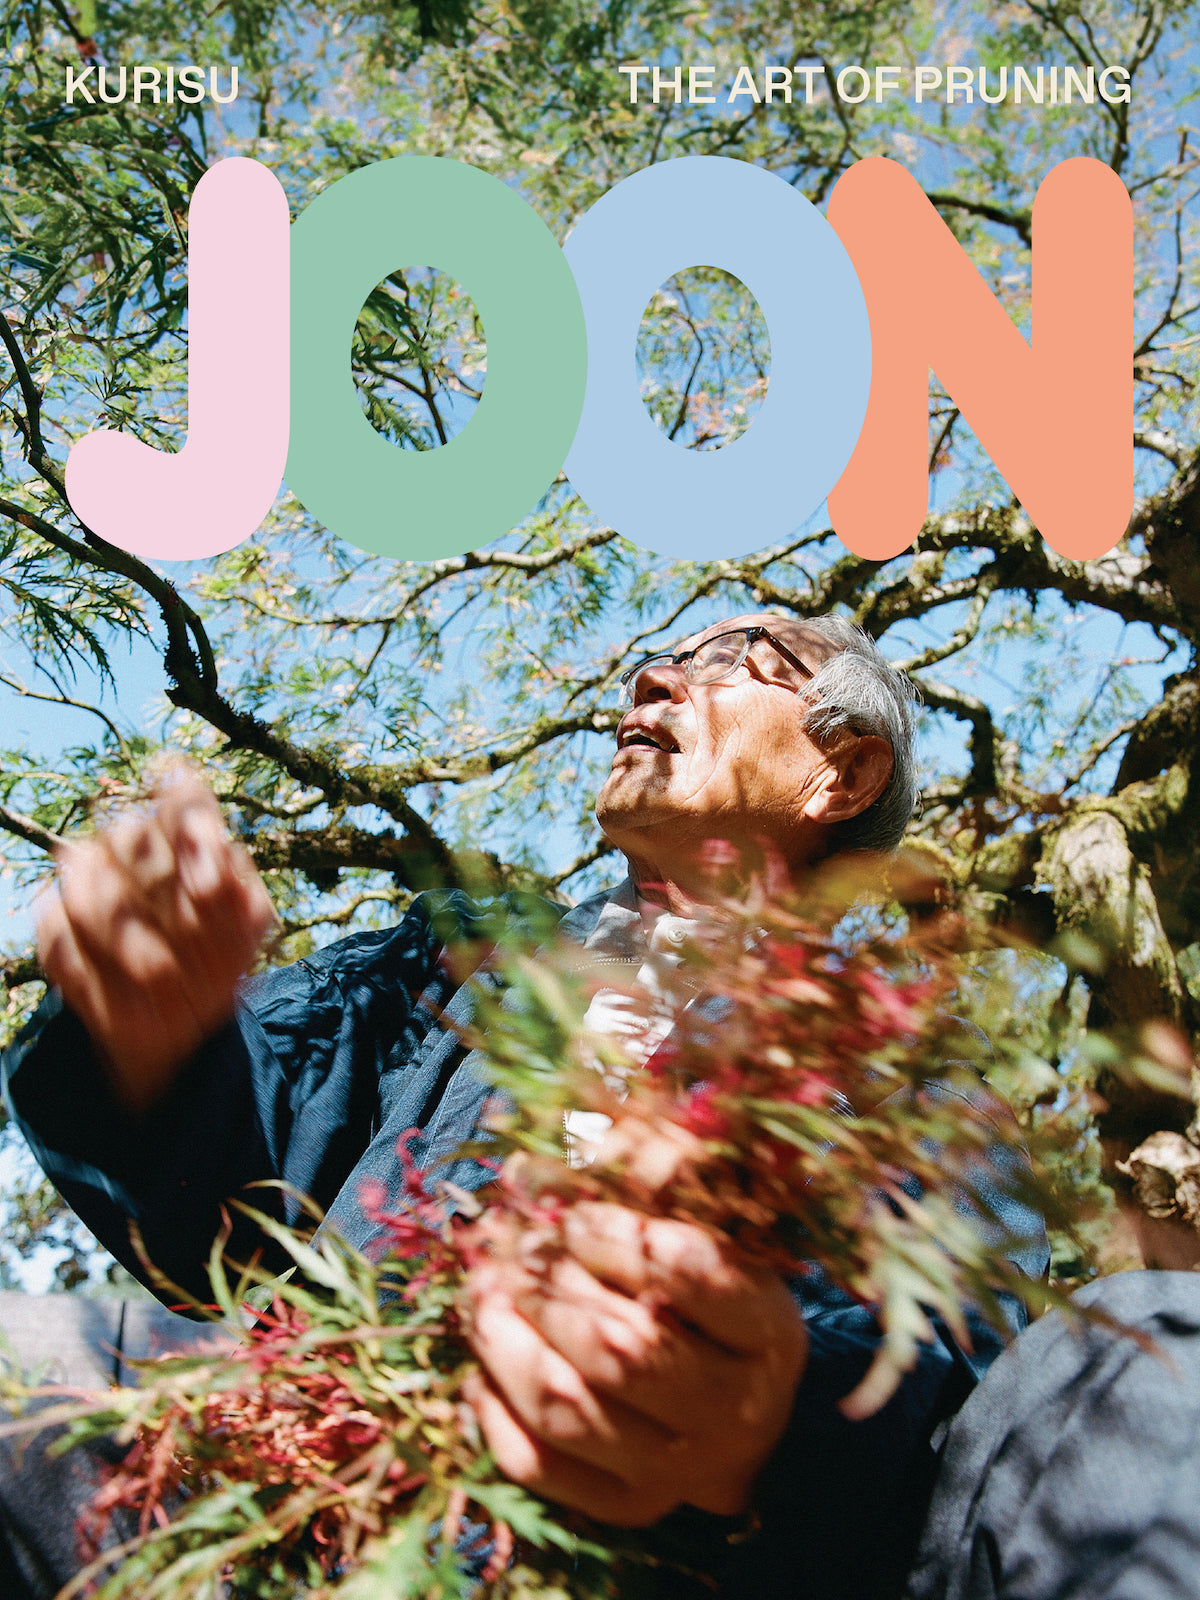 Joon Magazine, Kurisu: The Art of Pruning